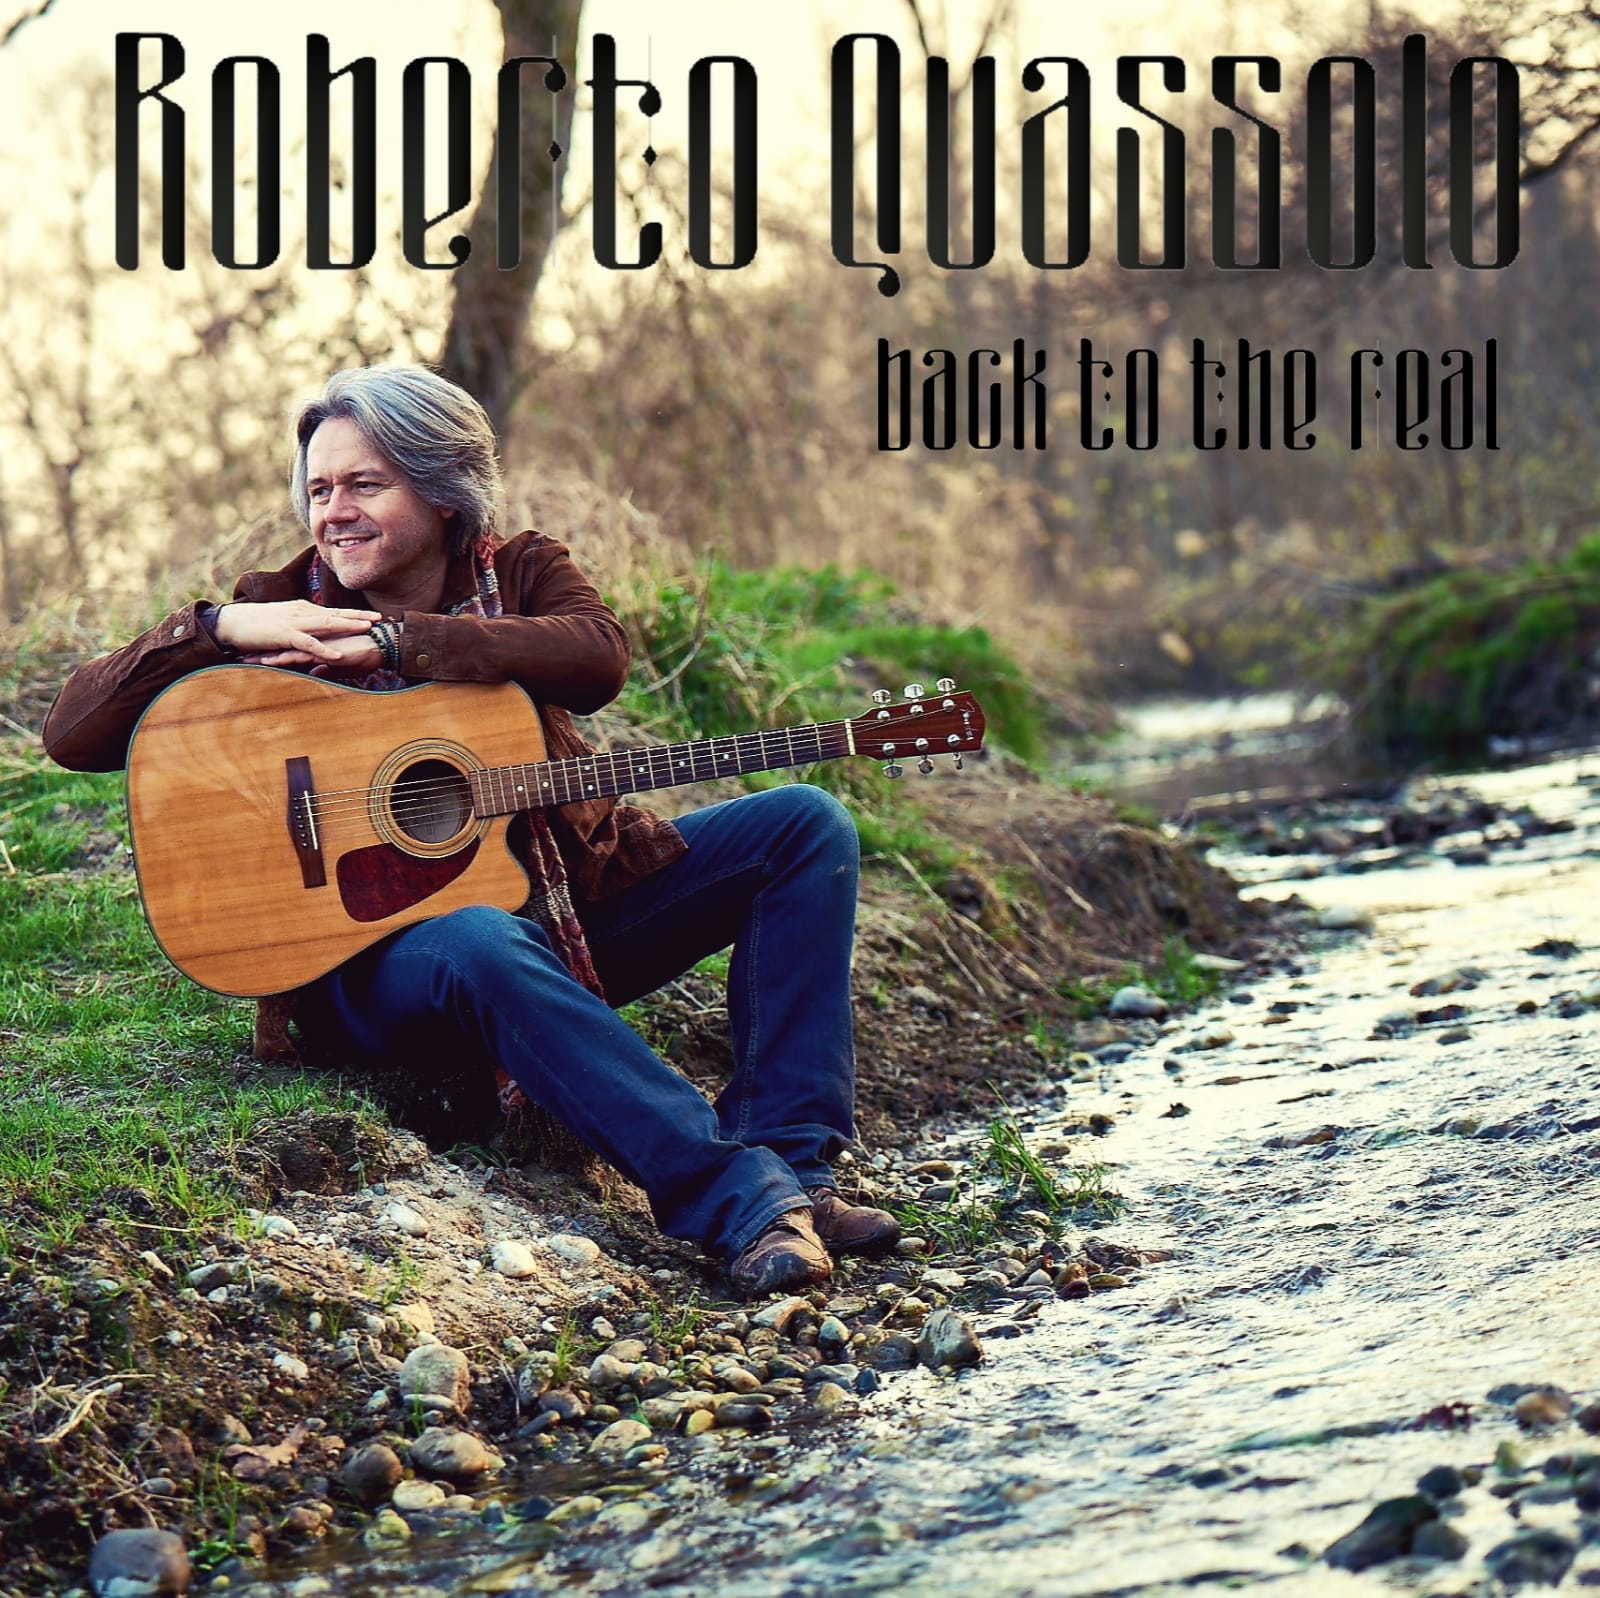 Al momento stai visualizzando “Back To The Real”, il nuovo singolo di Roberto Quassolo